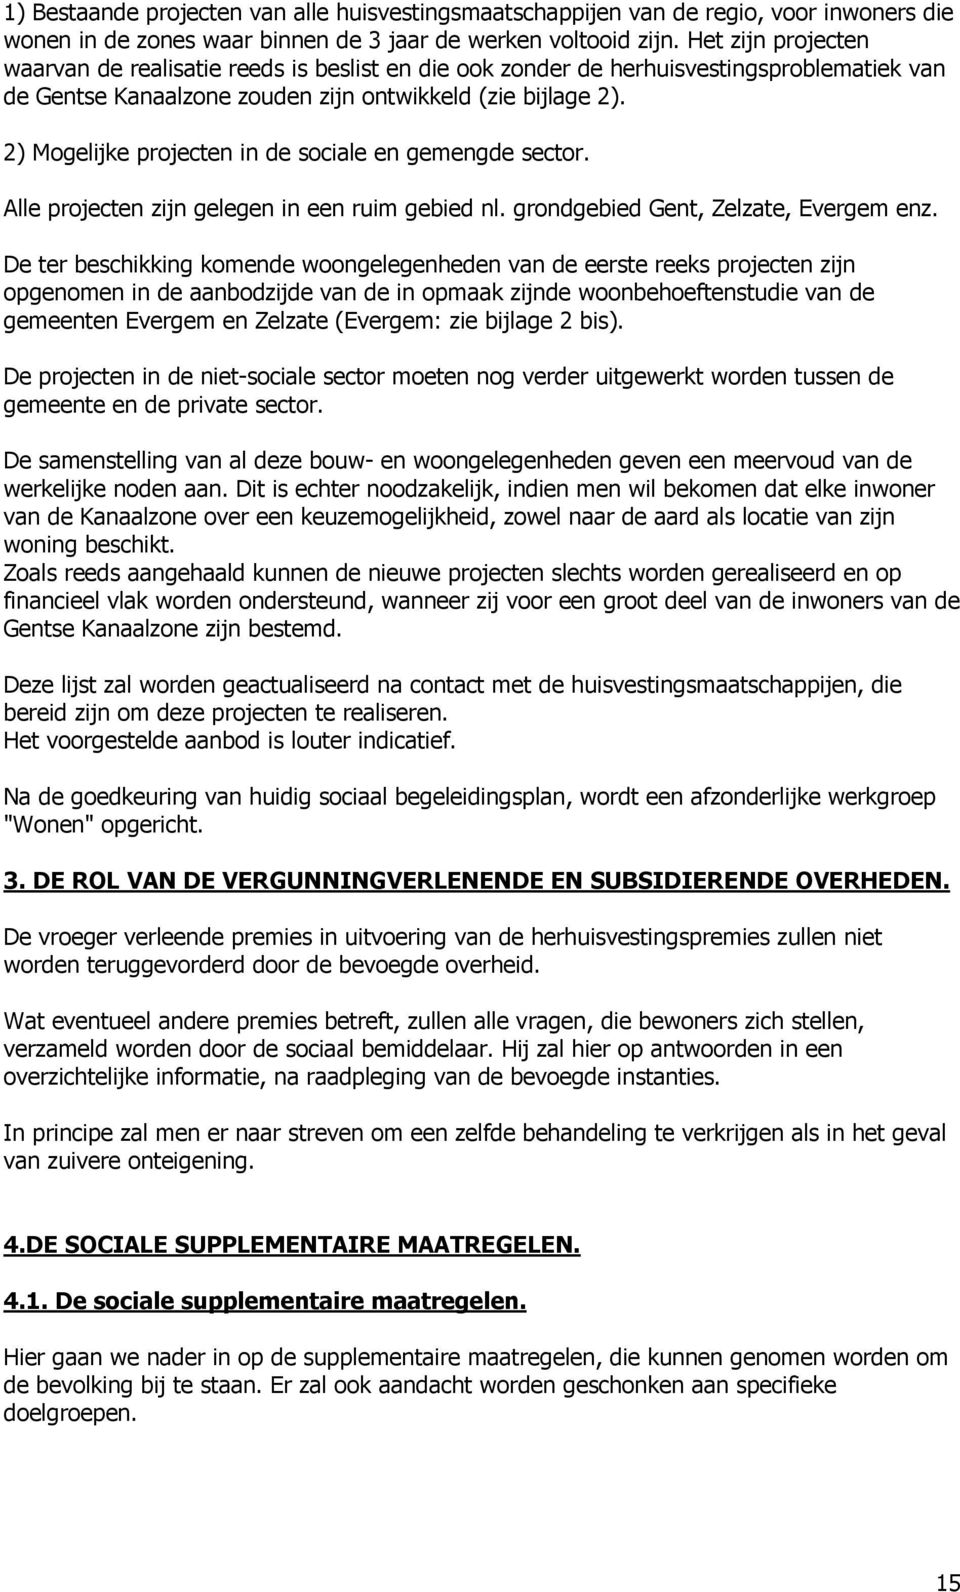 2) Mogelijke projecten in de sociale en gemengde sector. Alle projecten zijn gelegen in een ruim gebied nl. grondgebied Gent, Zelzate, Evergem enz.